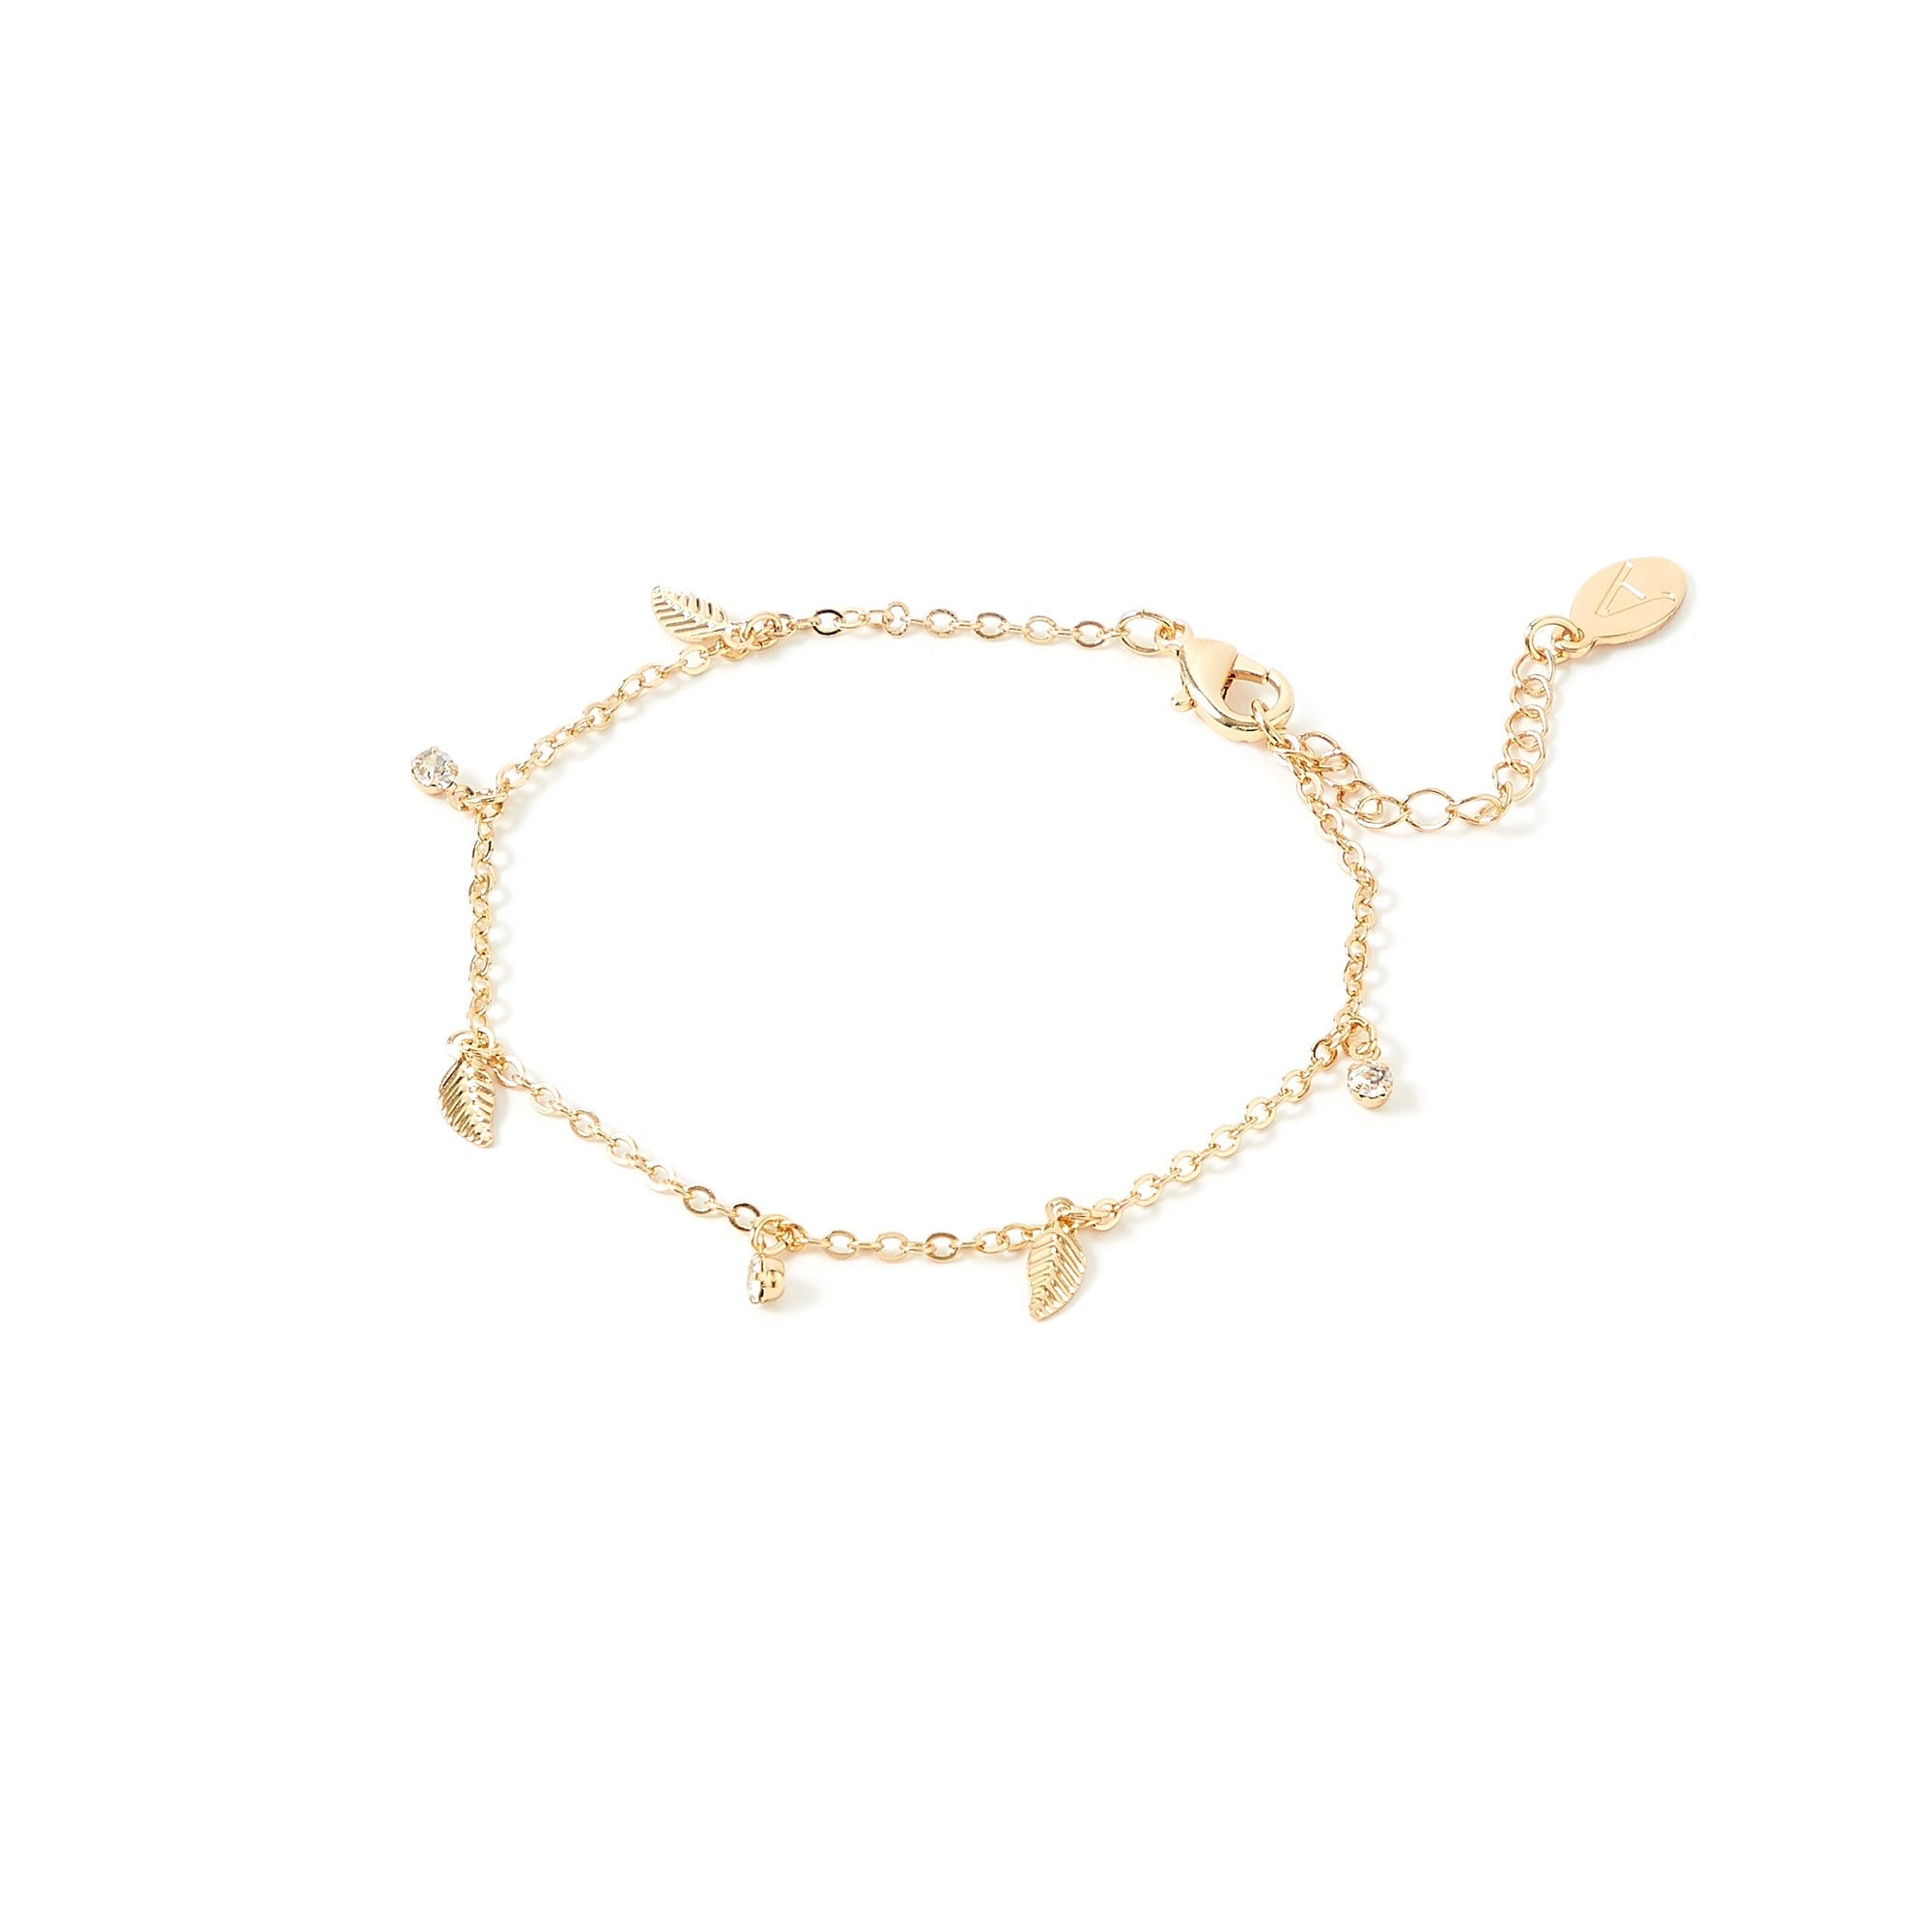 Encased Pearl Charm Bracelet | Bracelets | Accessorize ROI